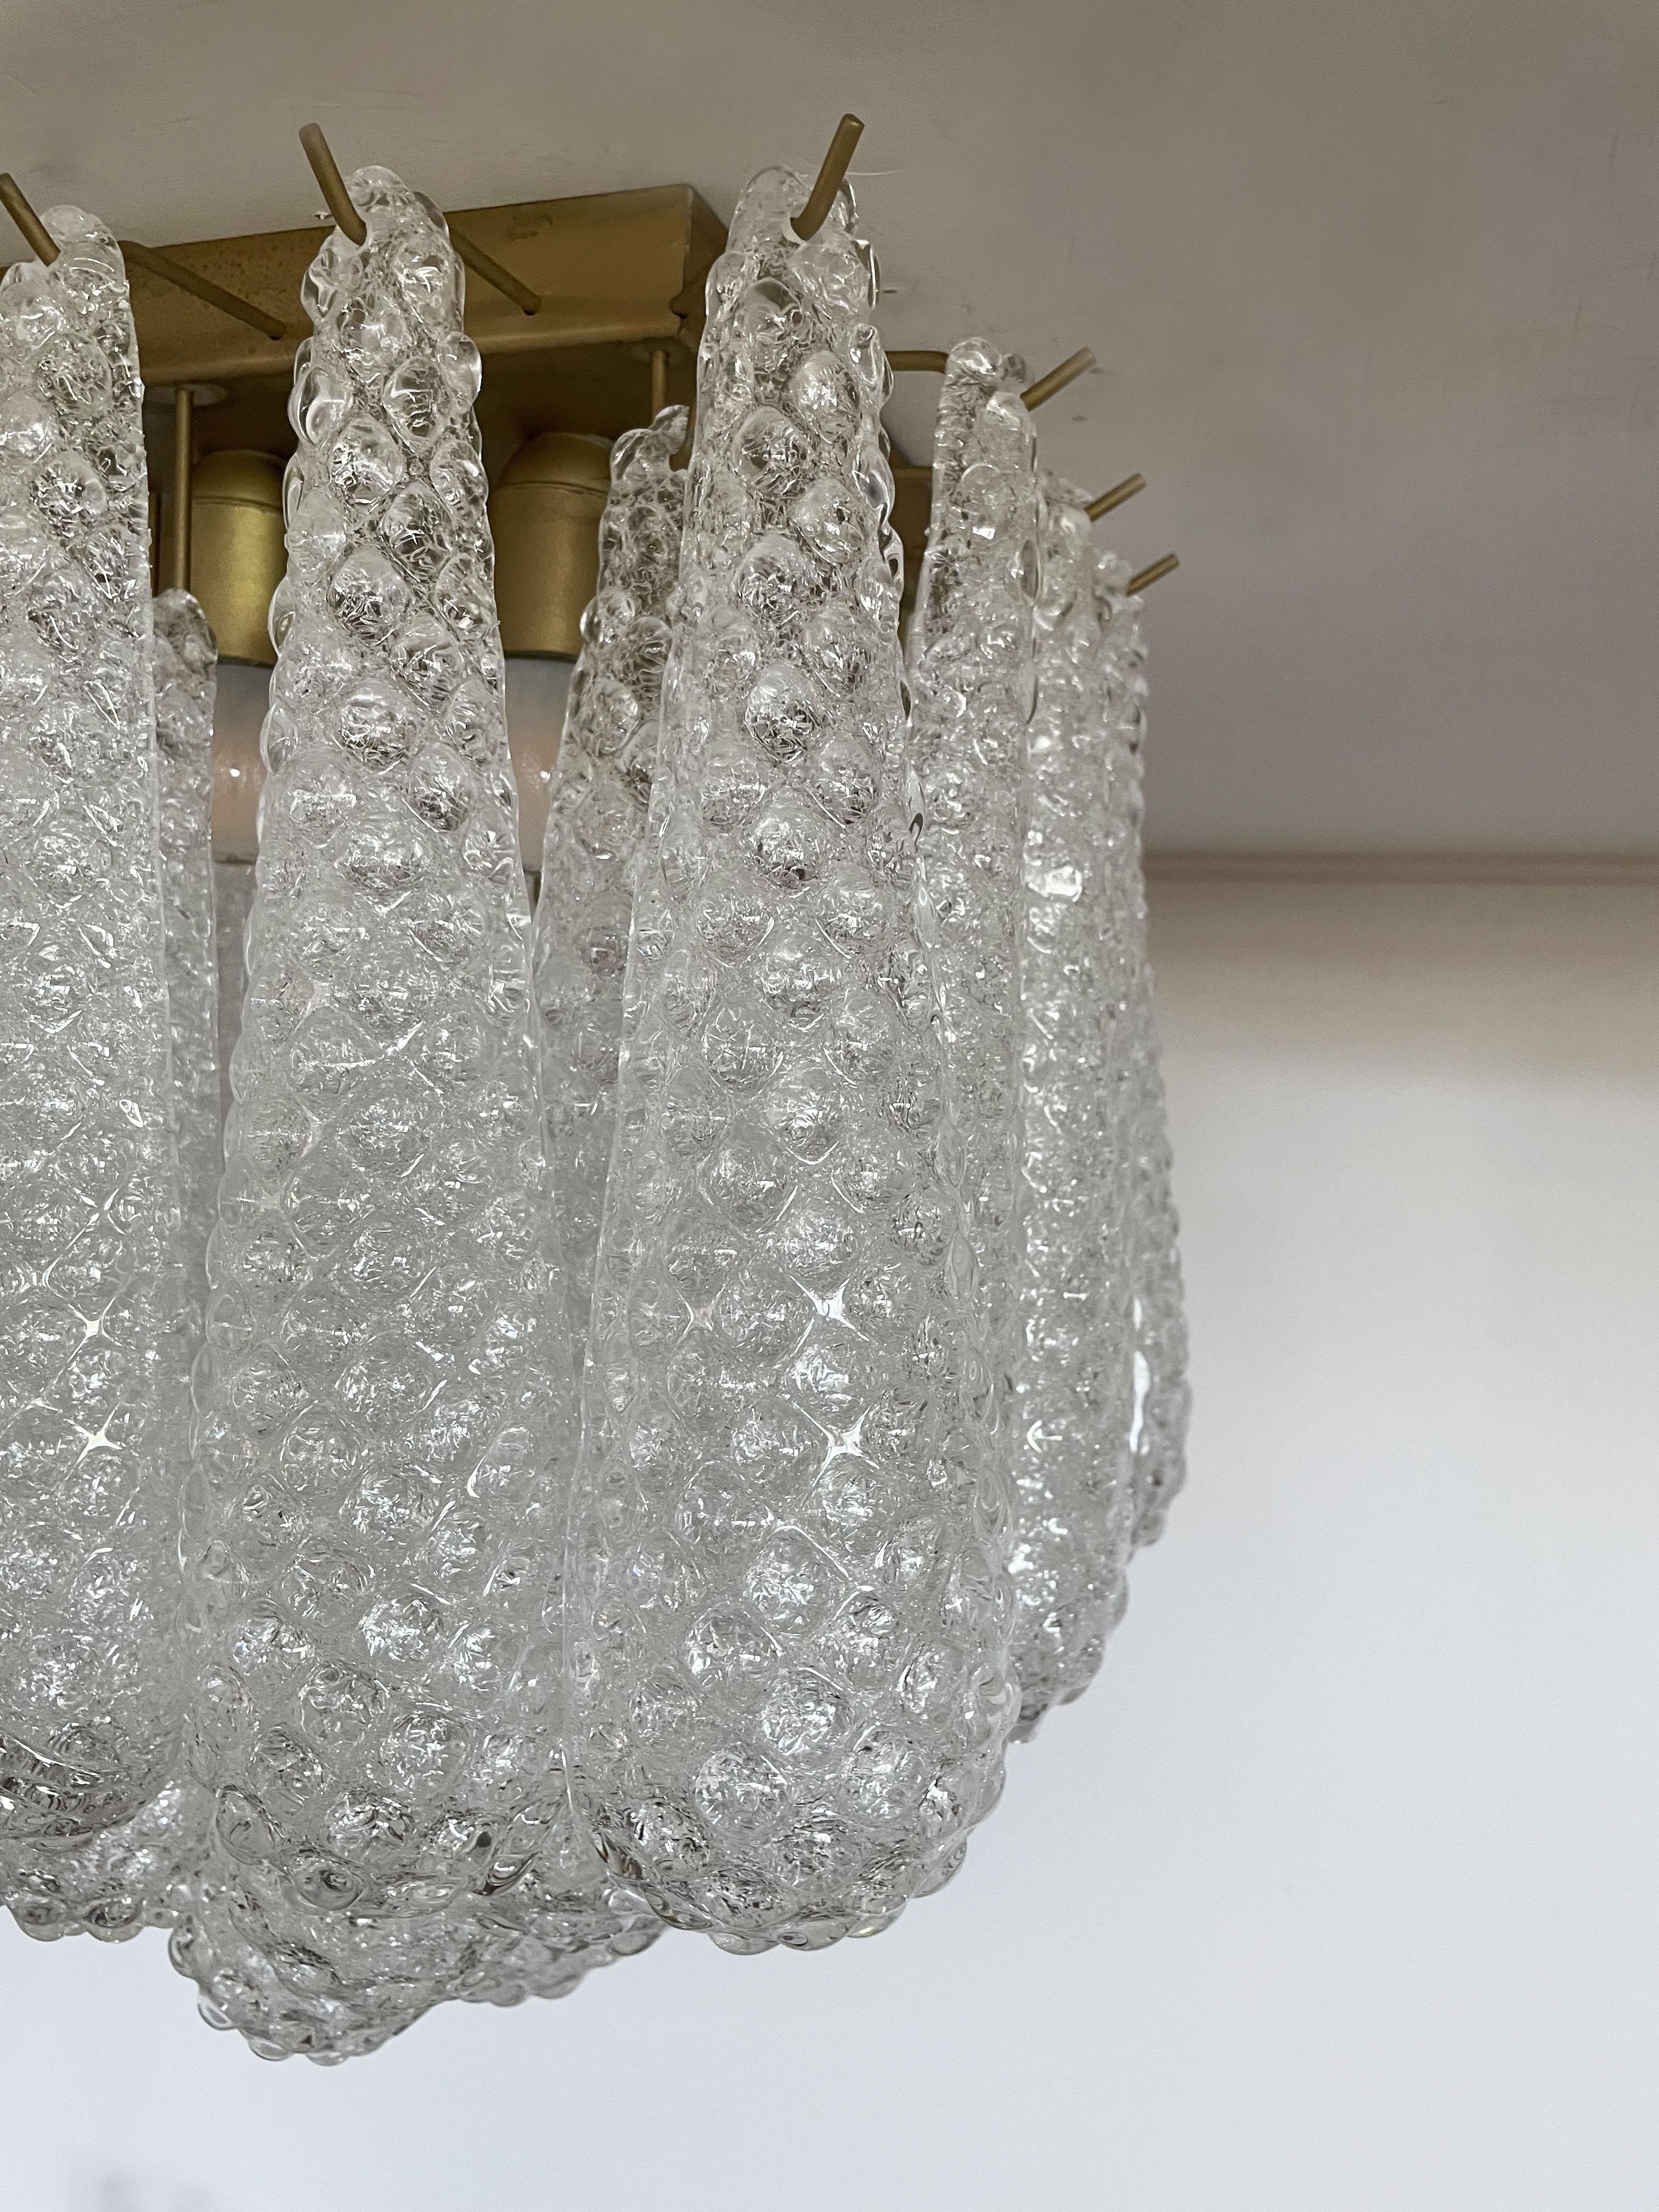 Italian Murano Ceiling Lamp, 32 Clear Glass Petal Drops